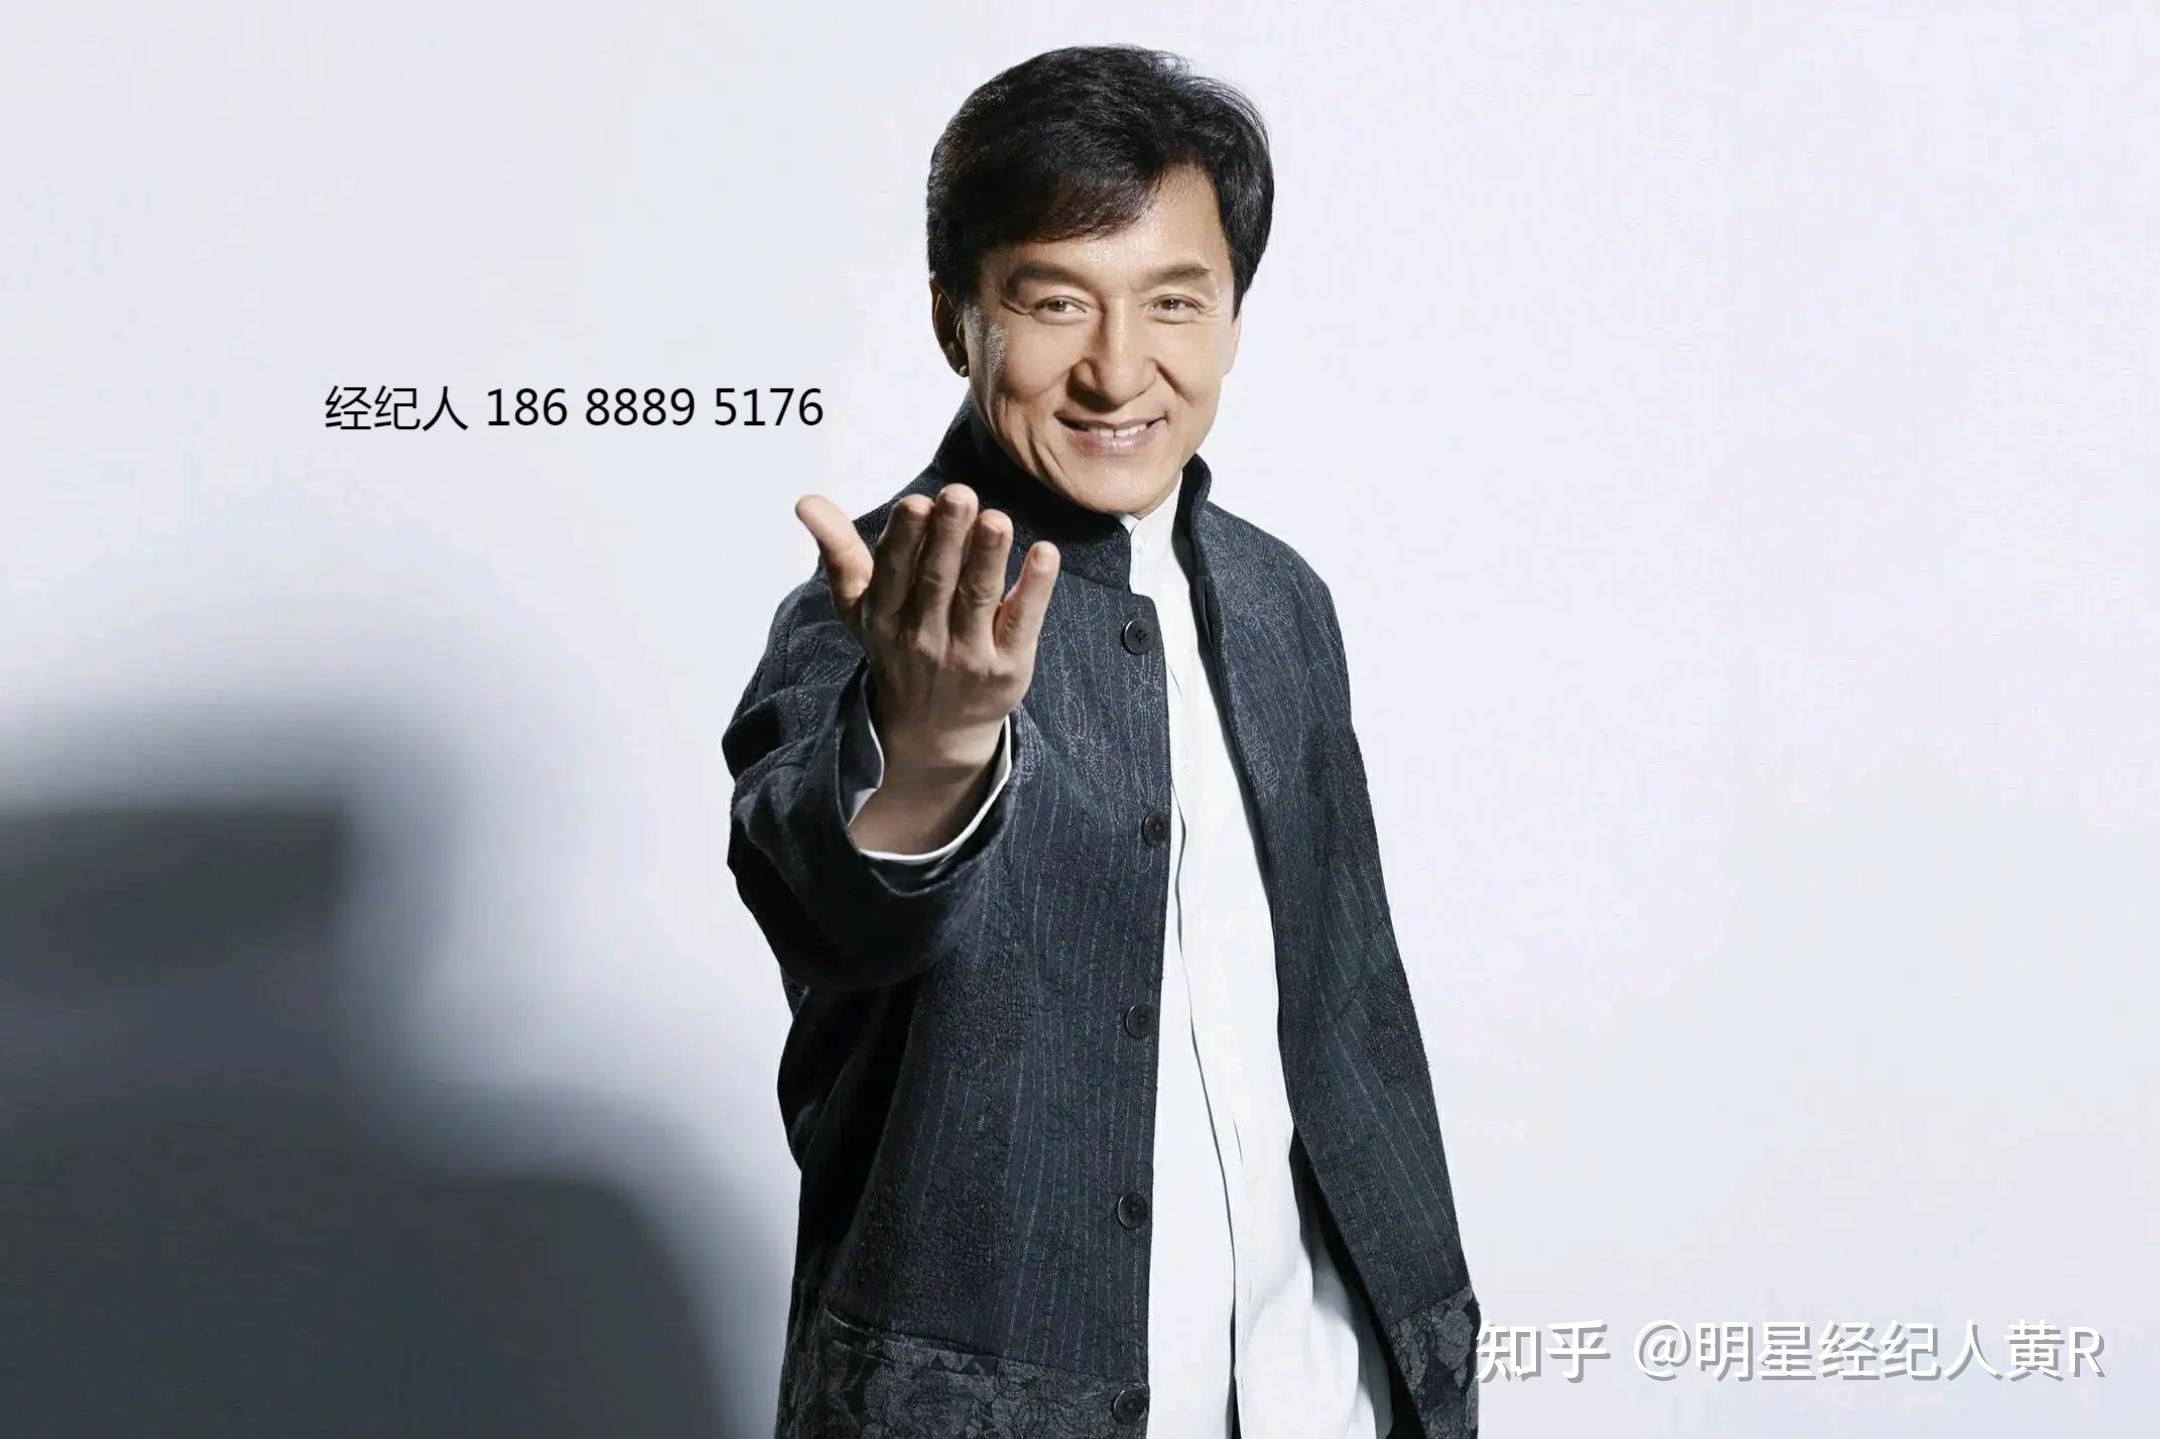 2015名人成龙 Jackie Chan签字活动签名照 中国传奇巨星奥斯卡终身成就奖投资珍藏必备官方信封秒杀一切信虫签 两张签名照官方信封一 ...